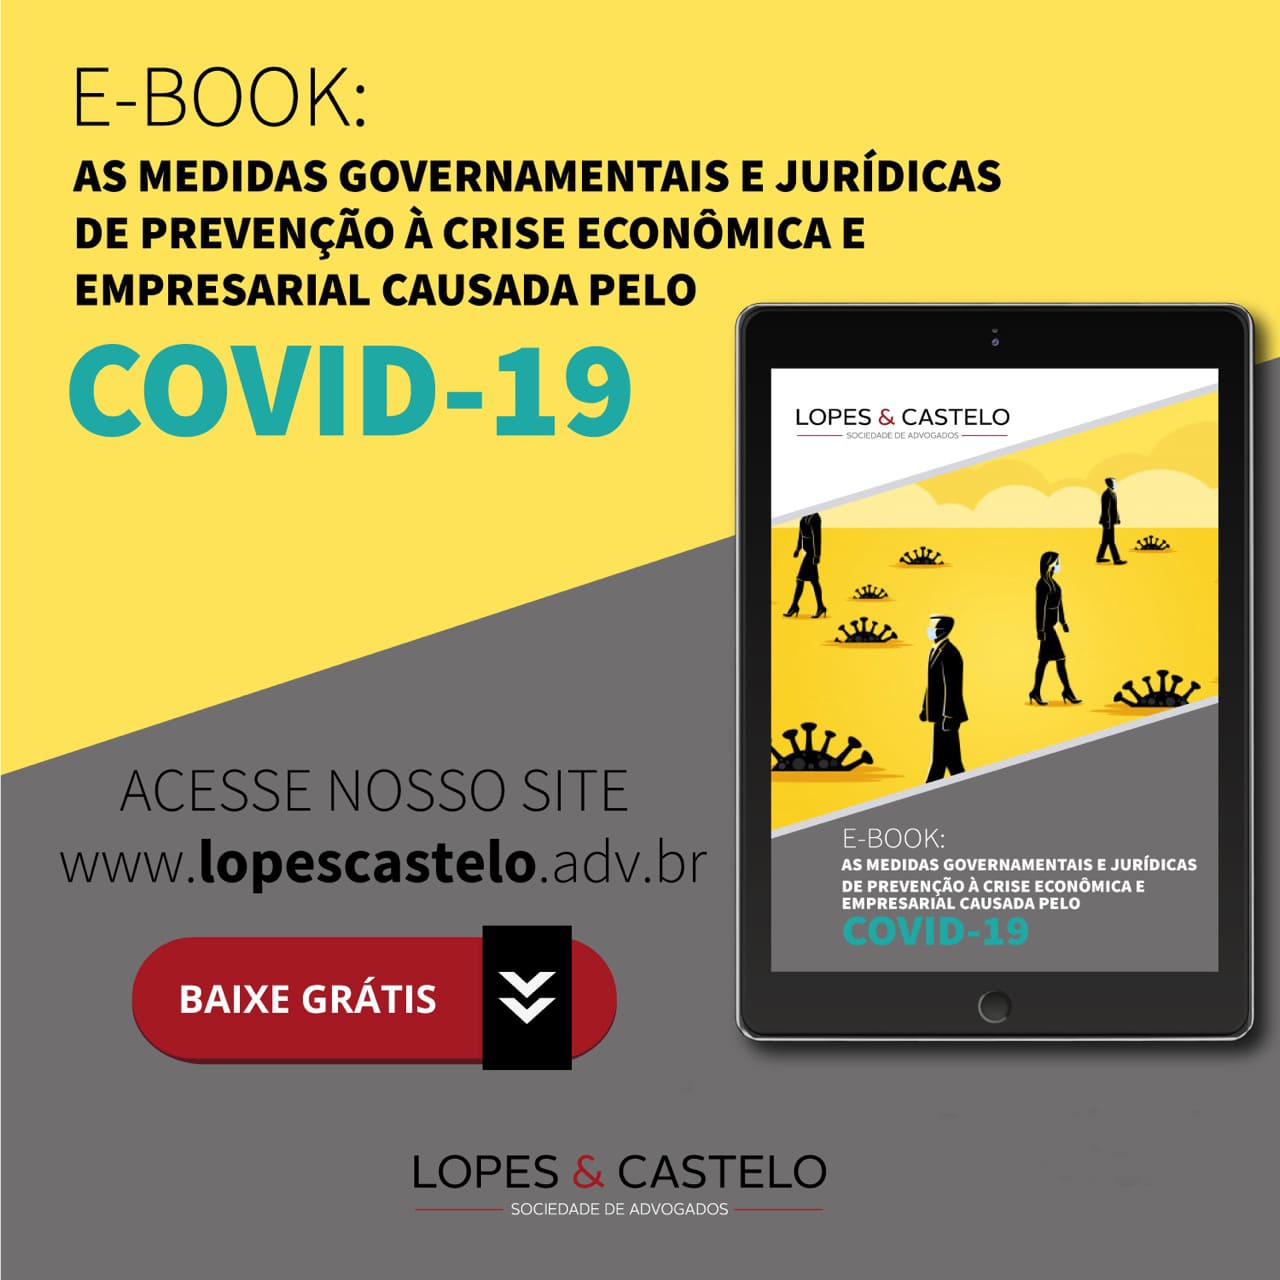 As medidas Governamentais e Jurídicas de prevenção à crise Econômica causada pelo COVID-19